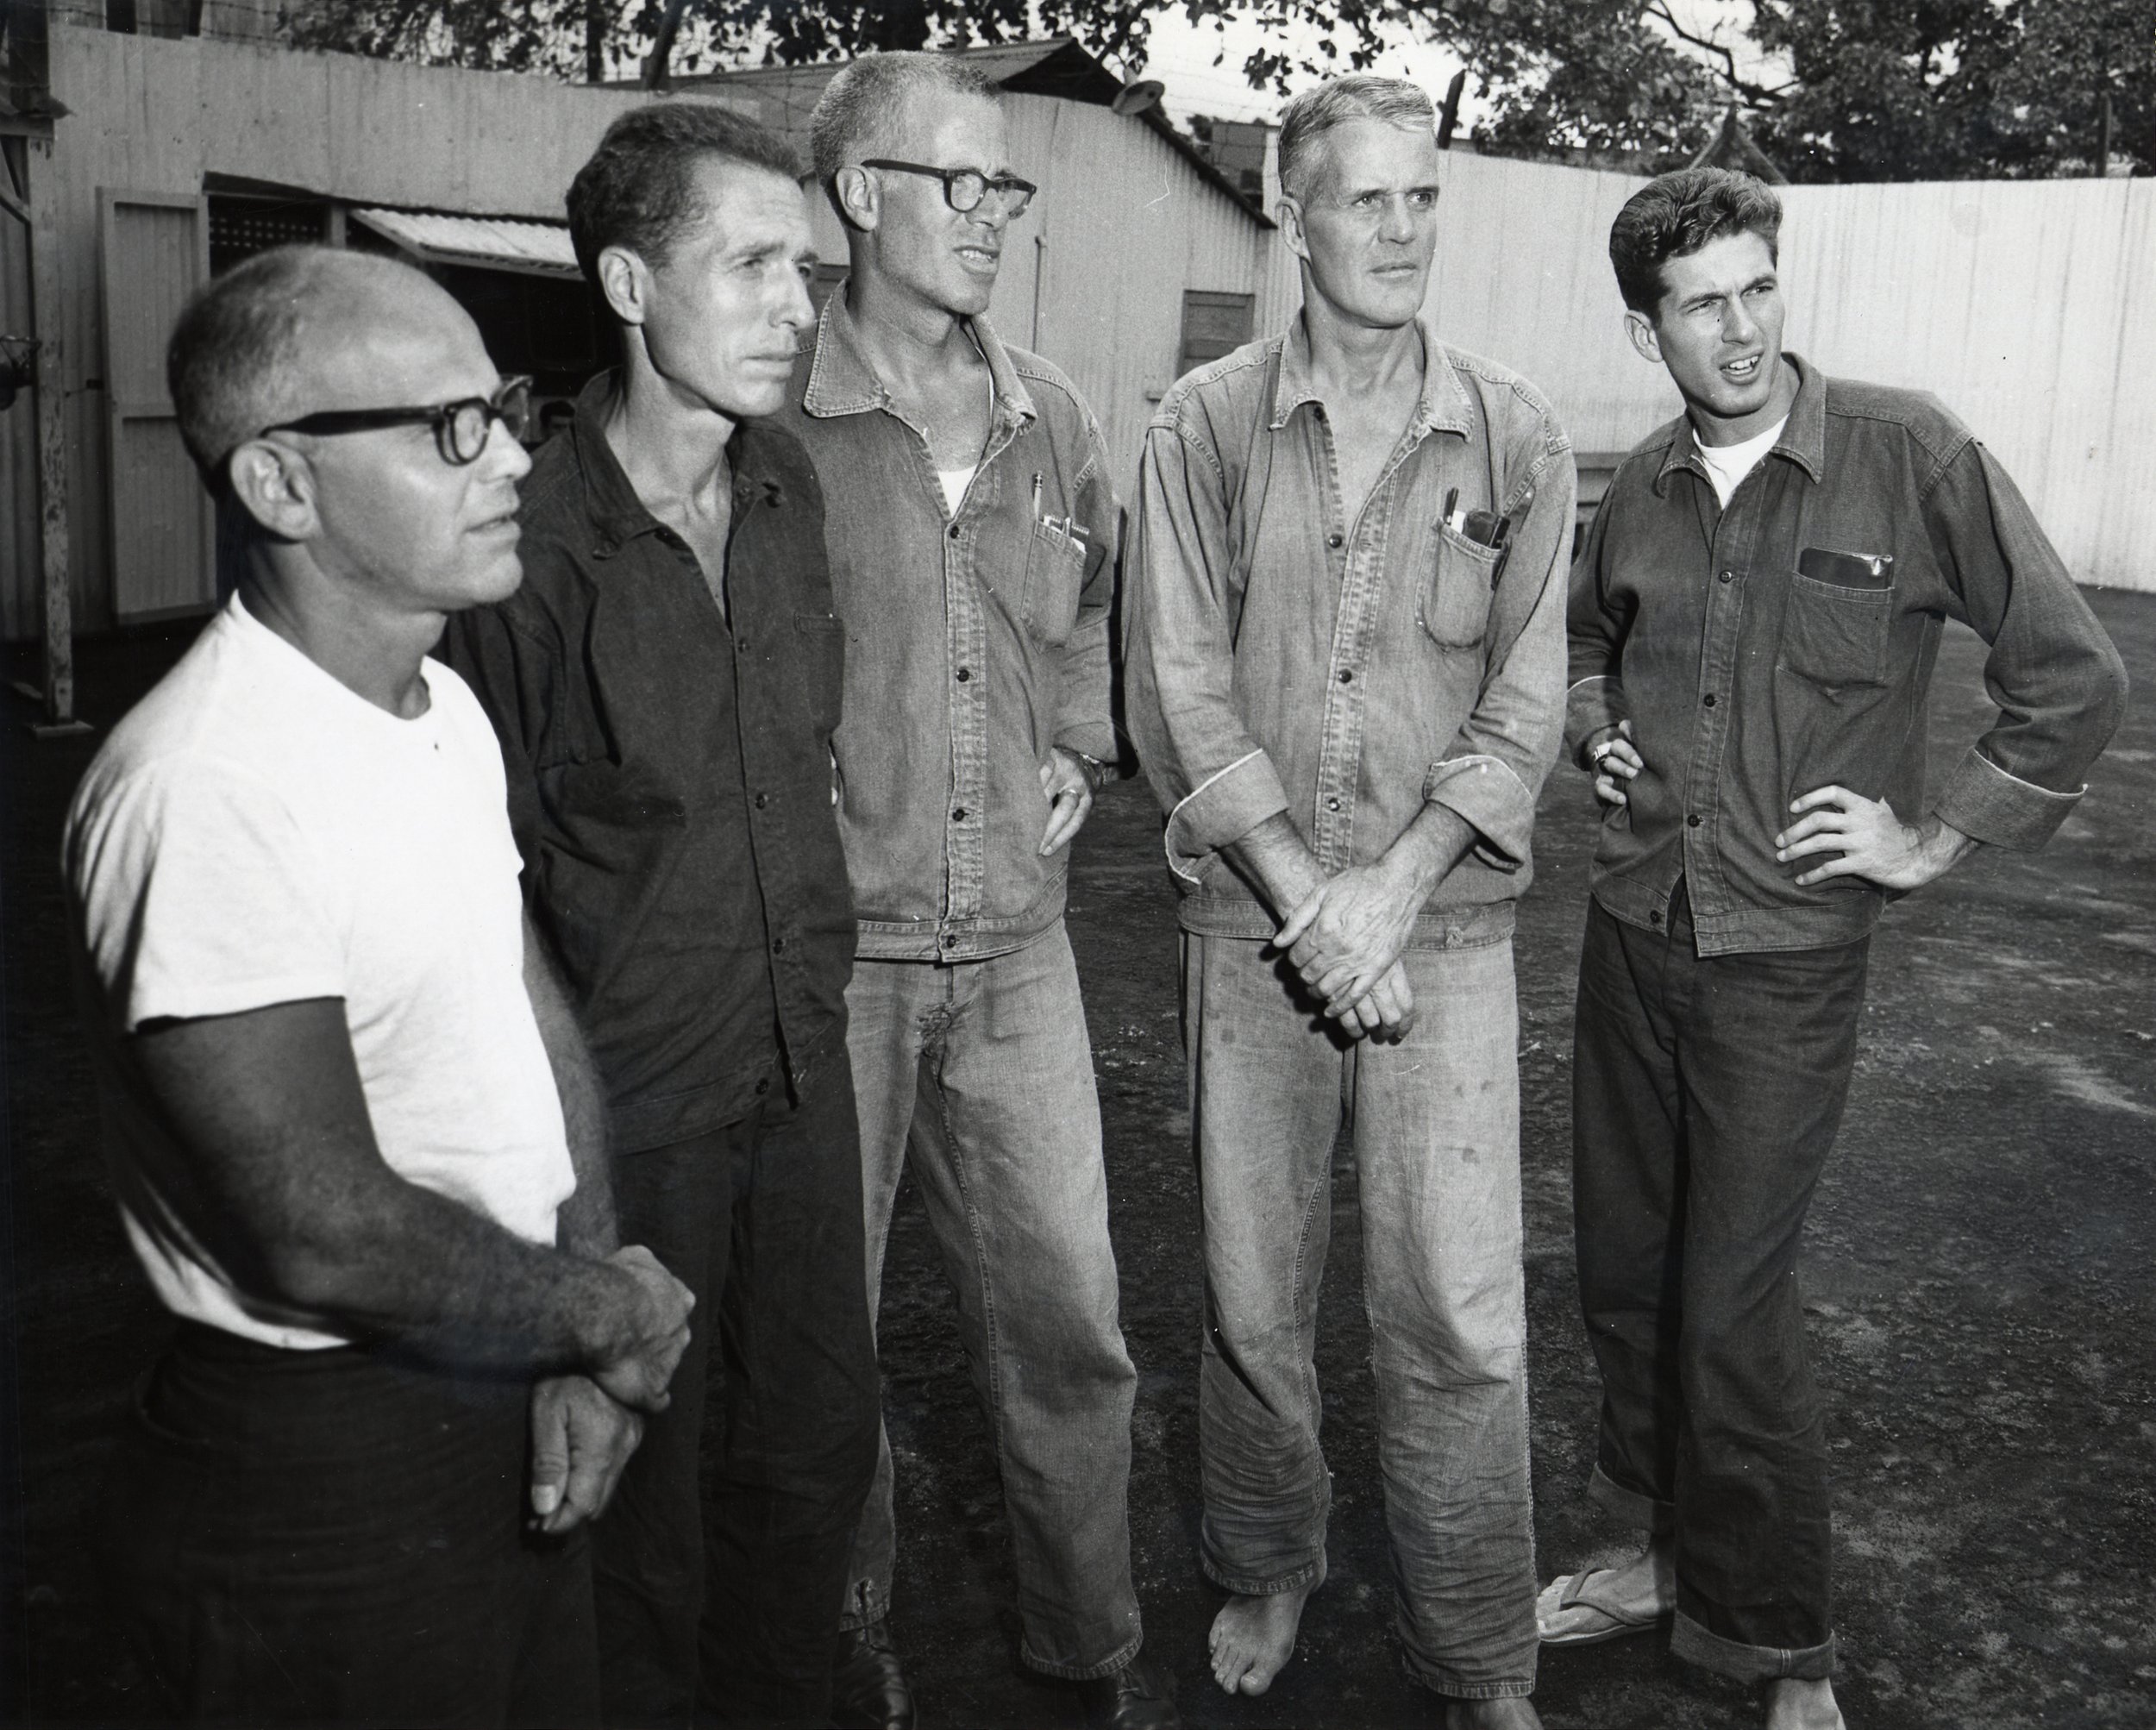 PhotImgGolden Rule_Crew in Prison Yard Honolulu_1958 2.jpg